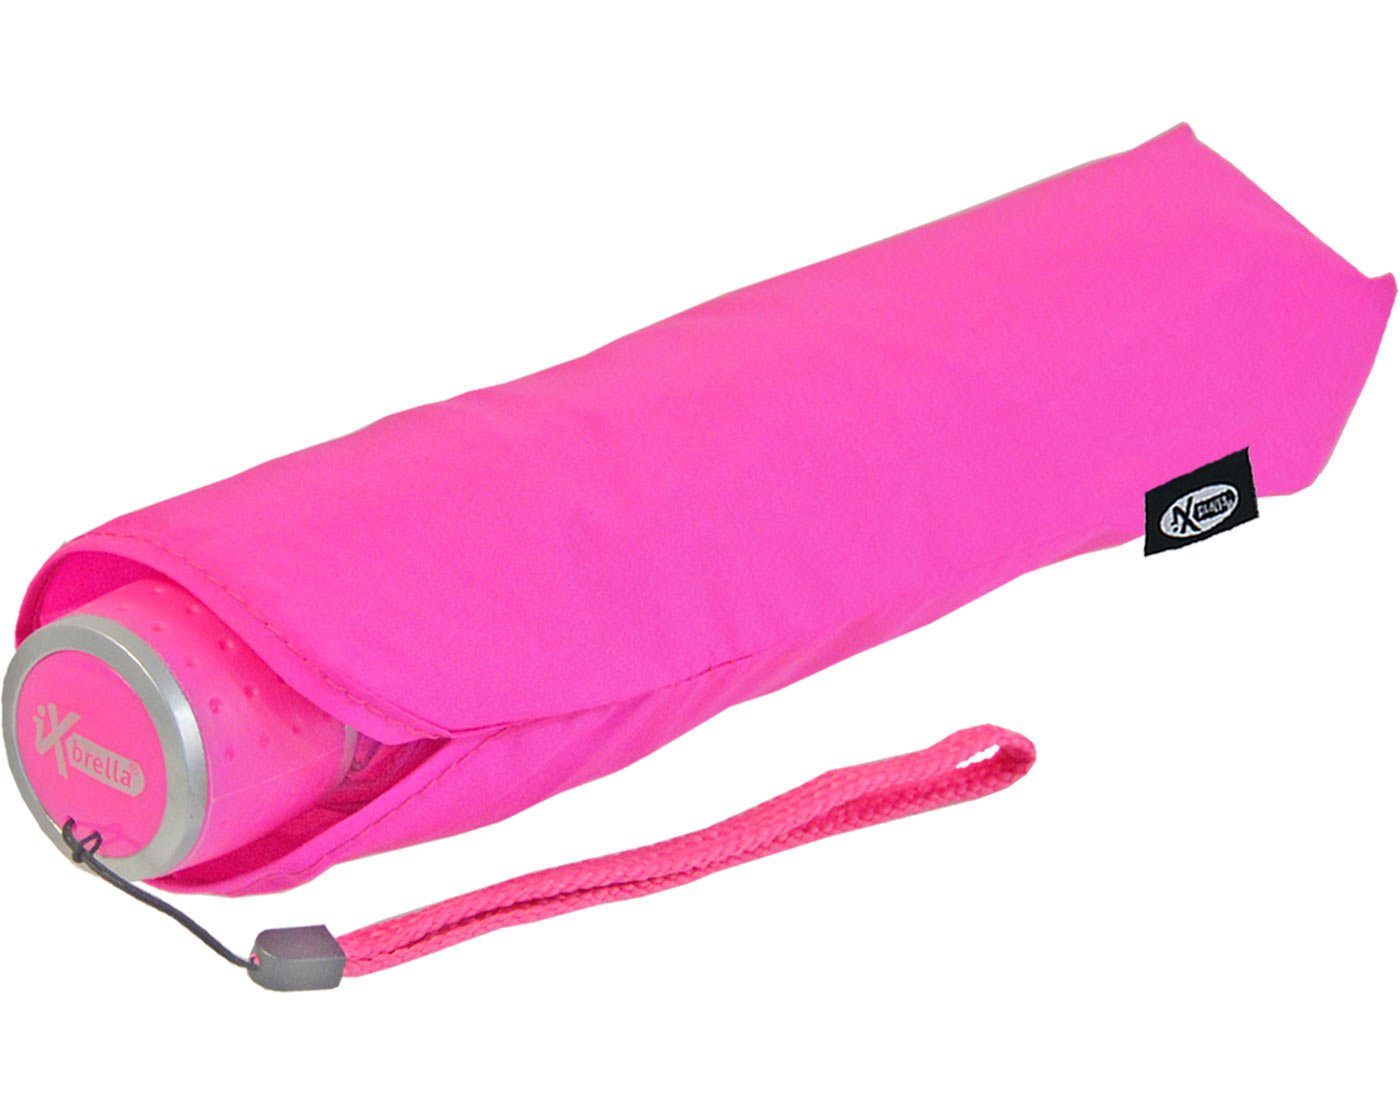 leicht, Dach Taschenregenschirm Mini iX-brella - Light großem Ultra - mit farbenfroh extra neon-pink